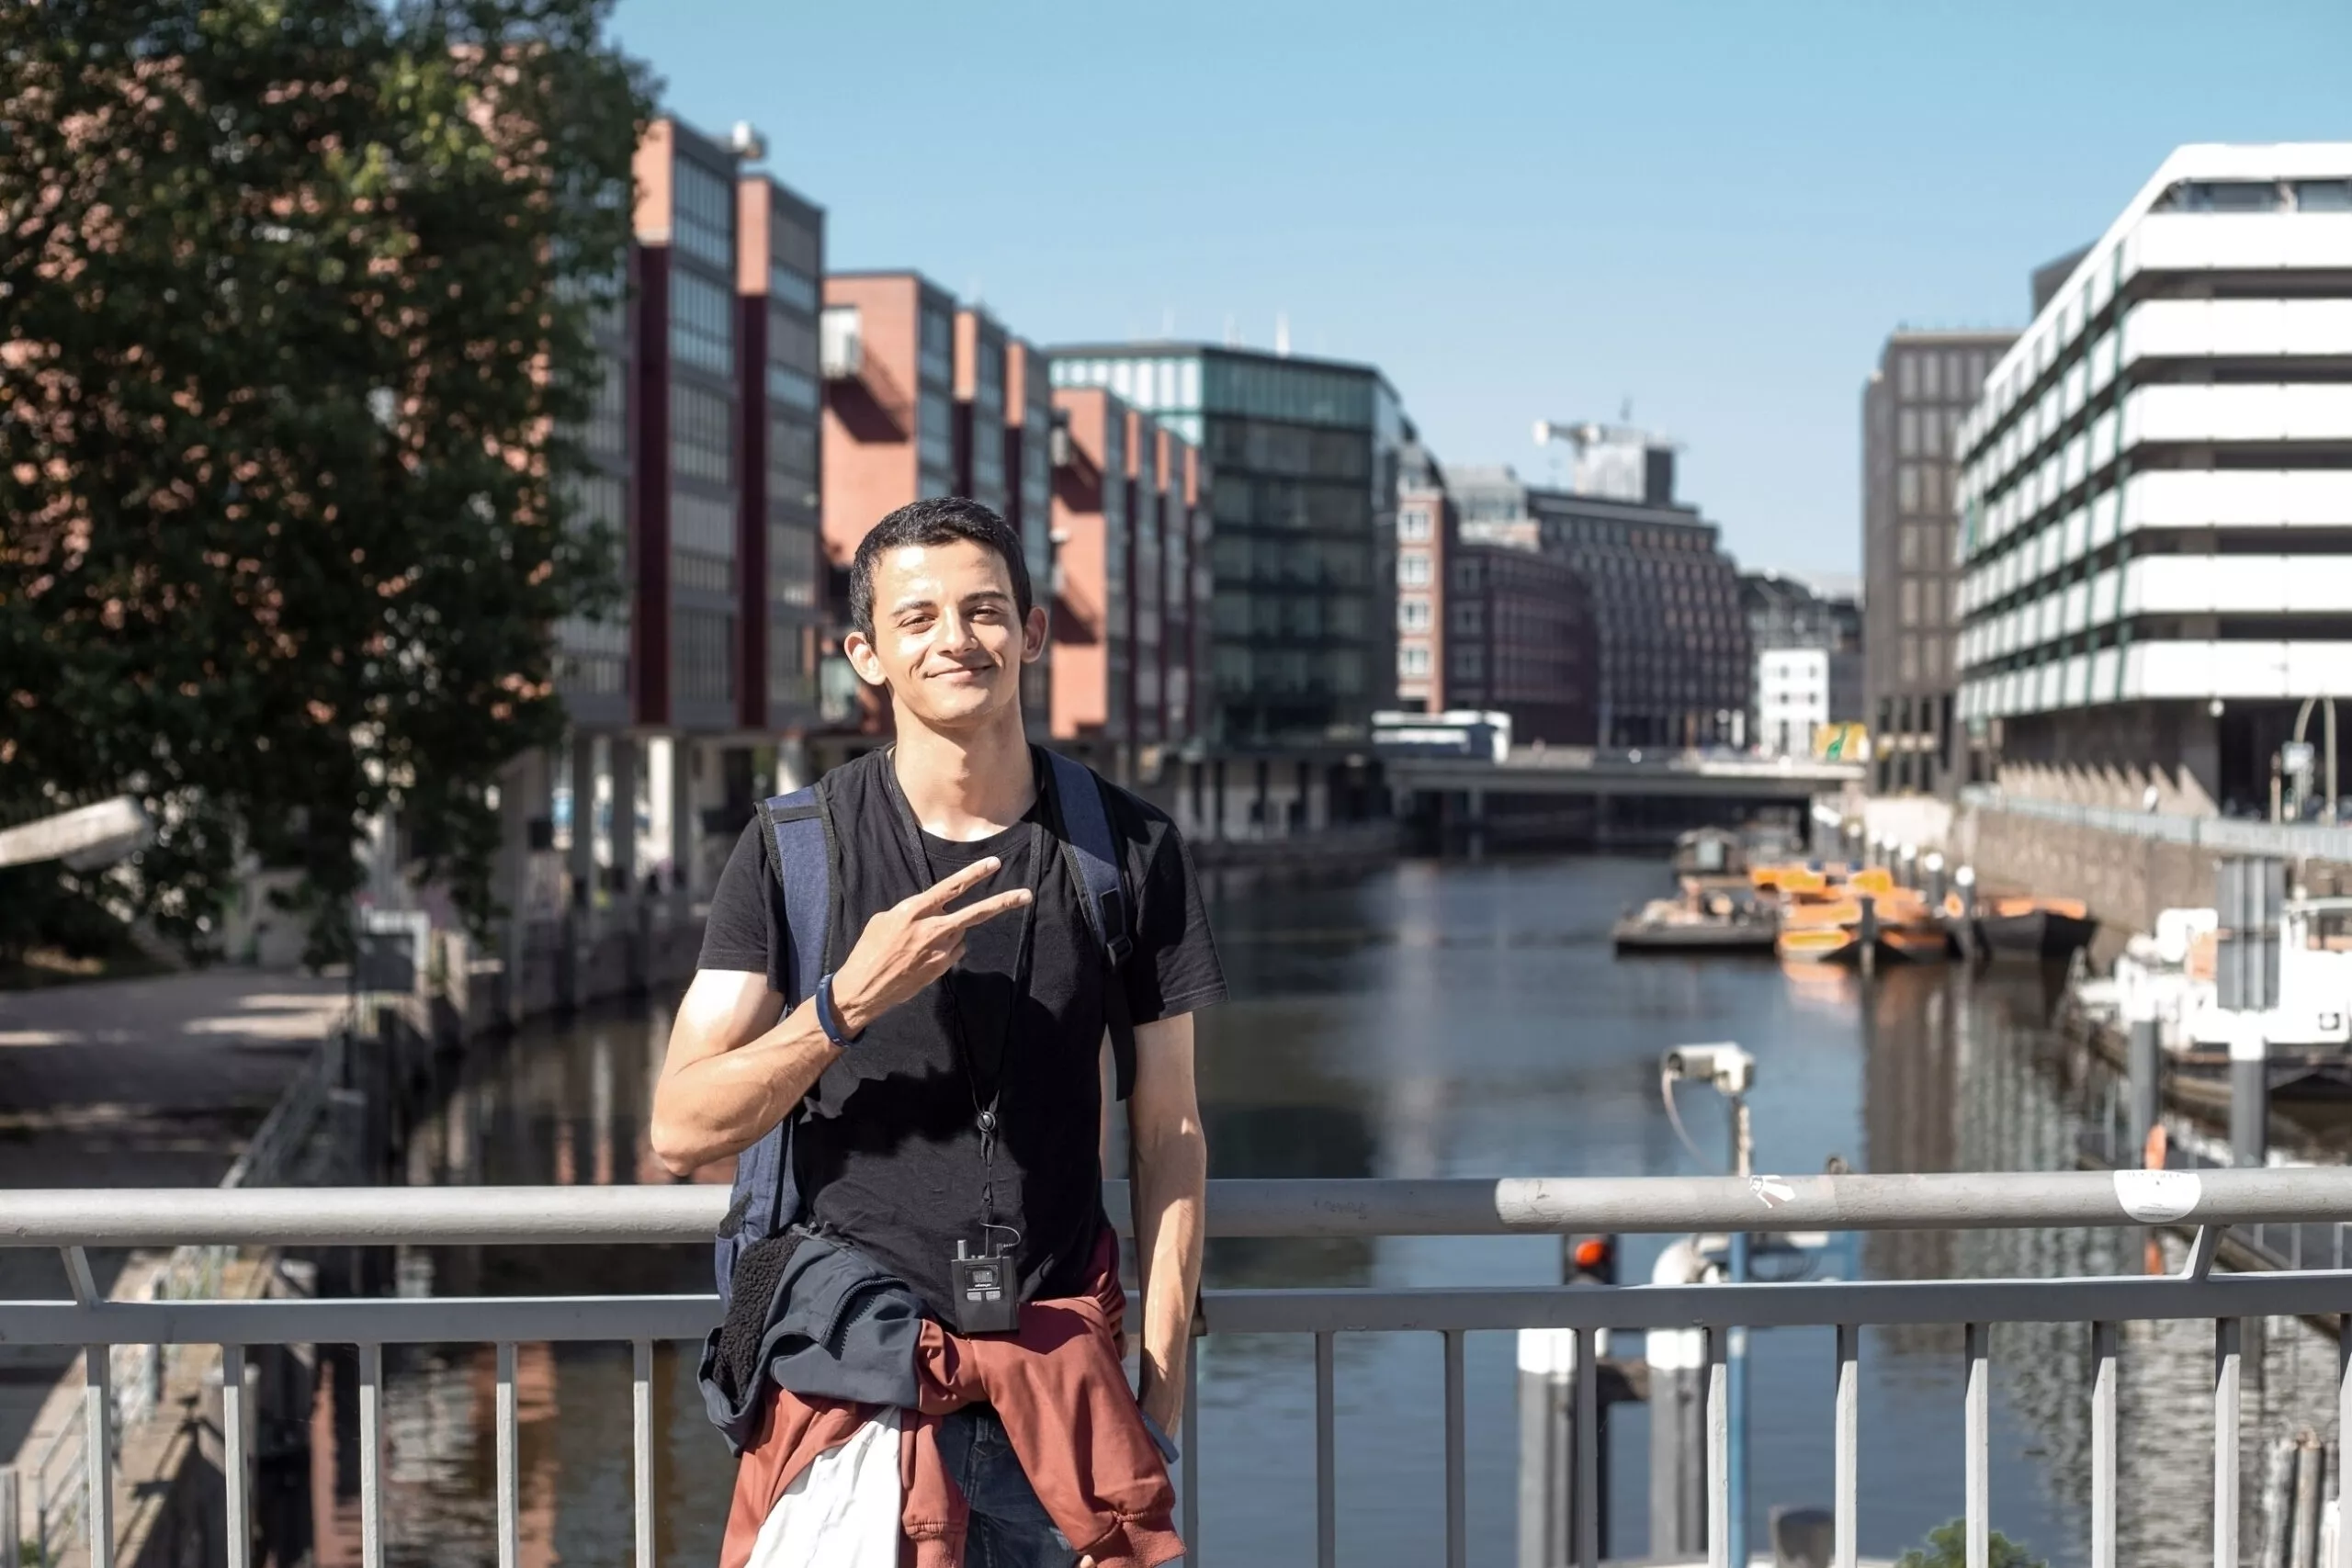 Jonge man uit het midden-oosten met rugzak loopt op eurotrip excursie in het centrum van Hamburg in Duitsland met behulp van audiogids en wordt gefotografeerd op de achtergrond van de stad grachten in de zonnige zomerdag